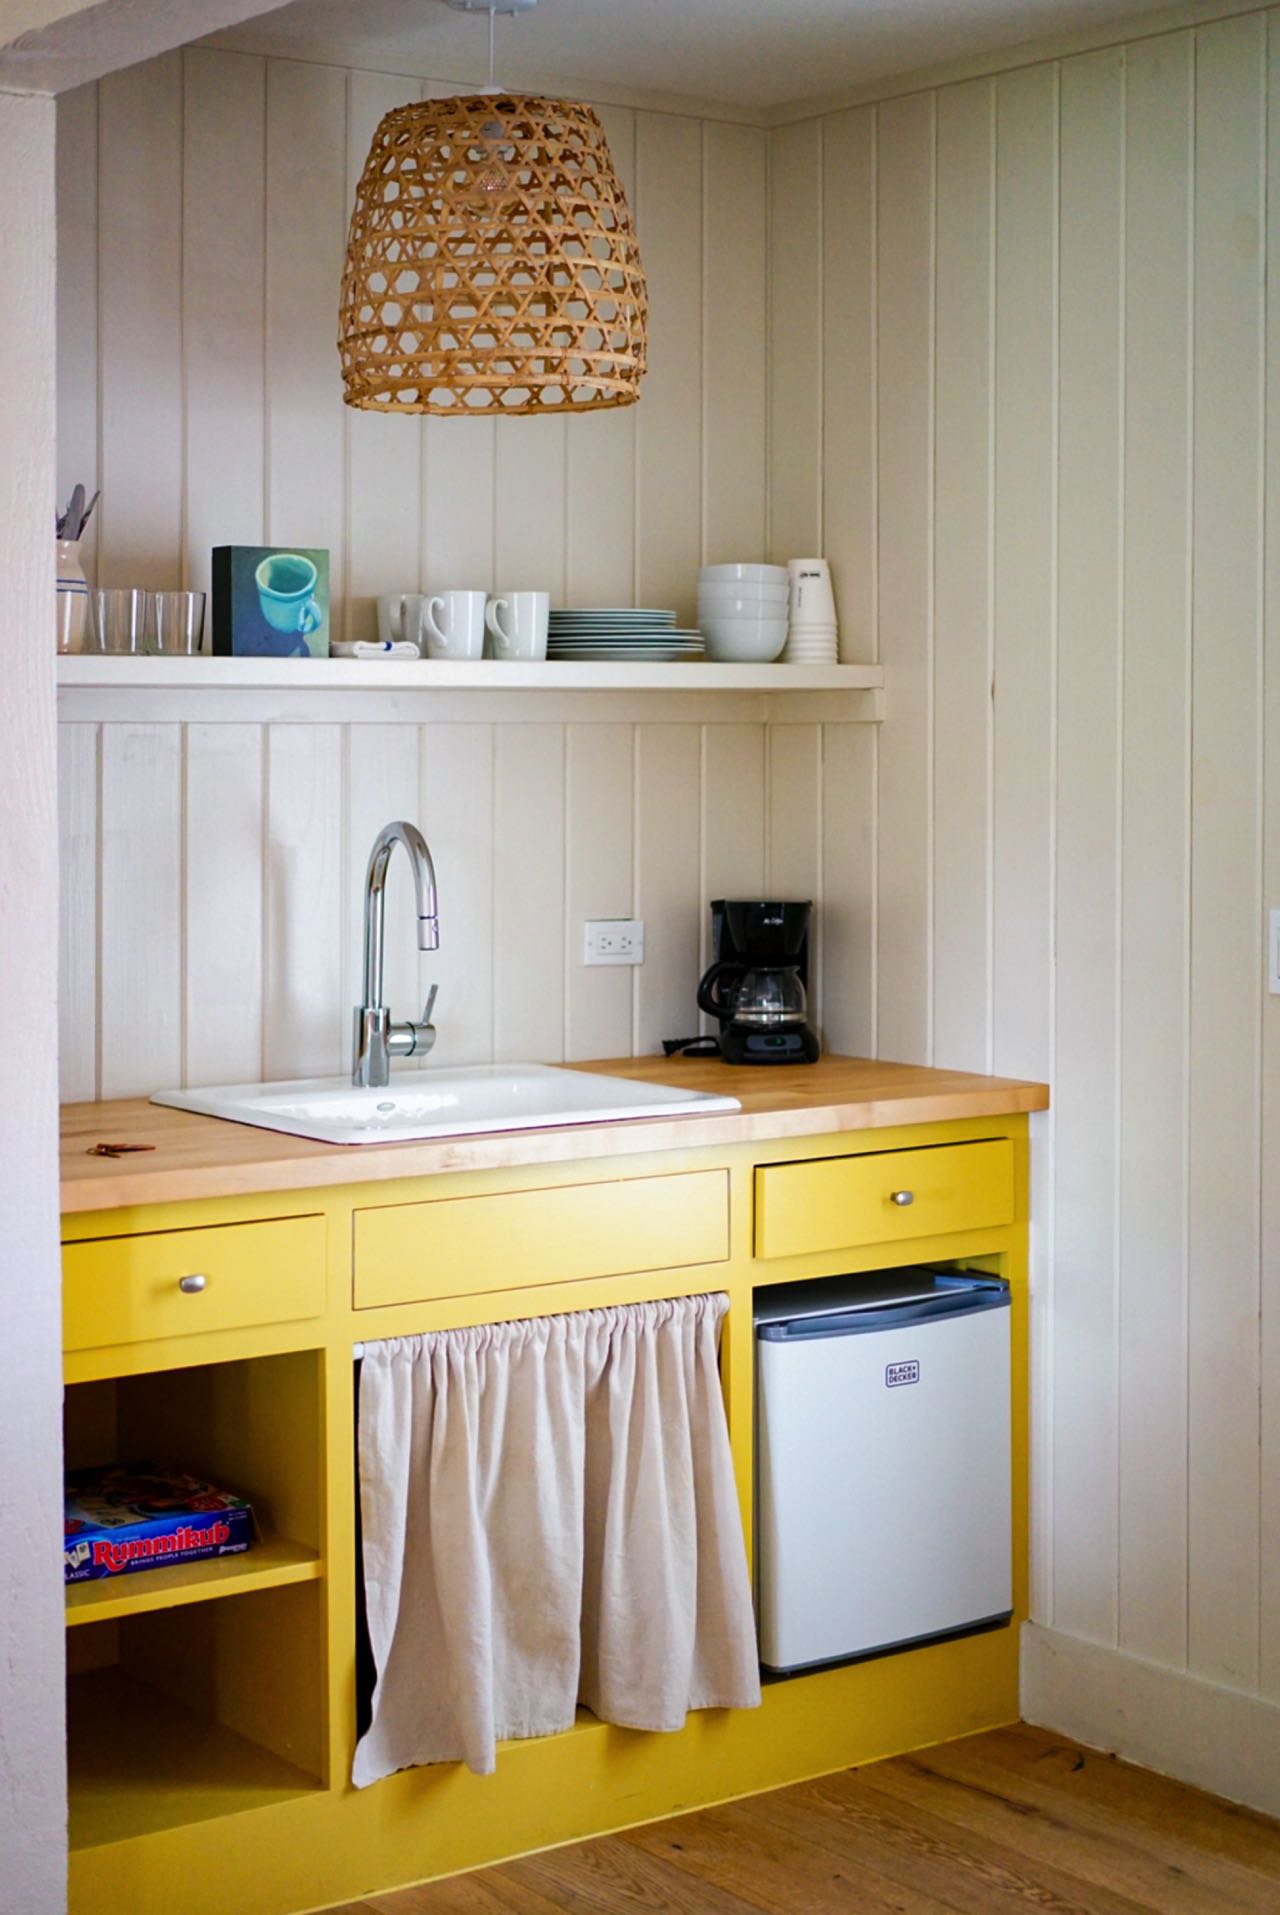 Sonnengelbe Küchenschränke setzen einen lebendigen Kontrast zu den weißen Holzpaneelen an den Wänden. Die natürliche Note der Korbgeflecht-Hängelampe und der Holzarbeitsplatte trifft auf die schlichte Eleganz des weißen Keramikspülbeckens und des einfachen Regals. Foto: Megan Bucknall bye unsplash